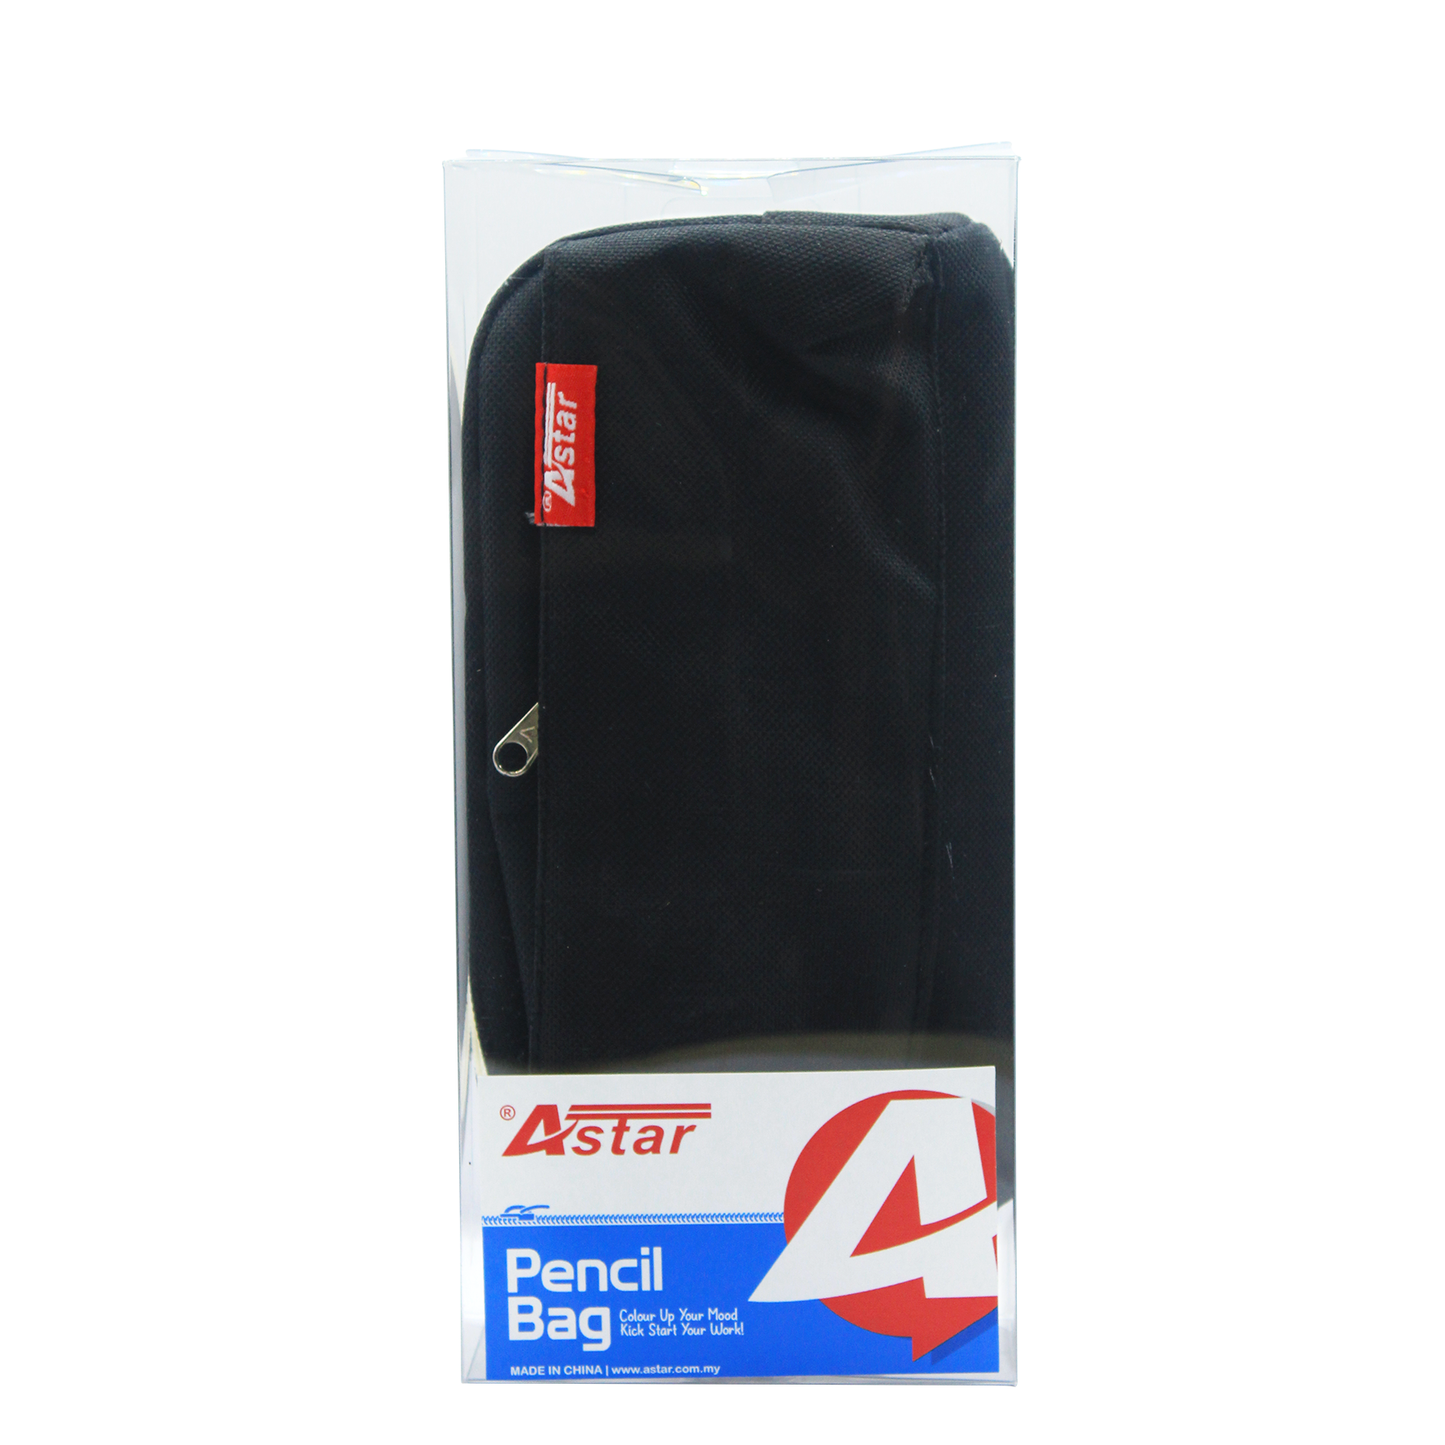 DSC0007 - ASTAR PENCIL BAG